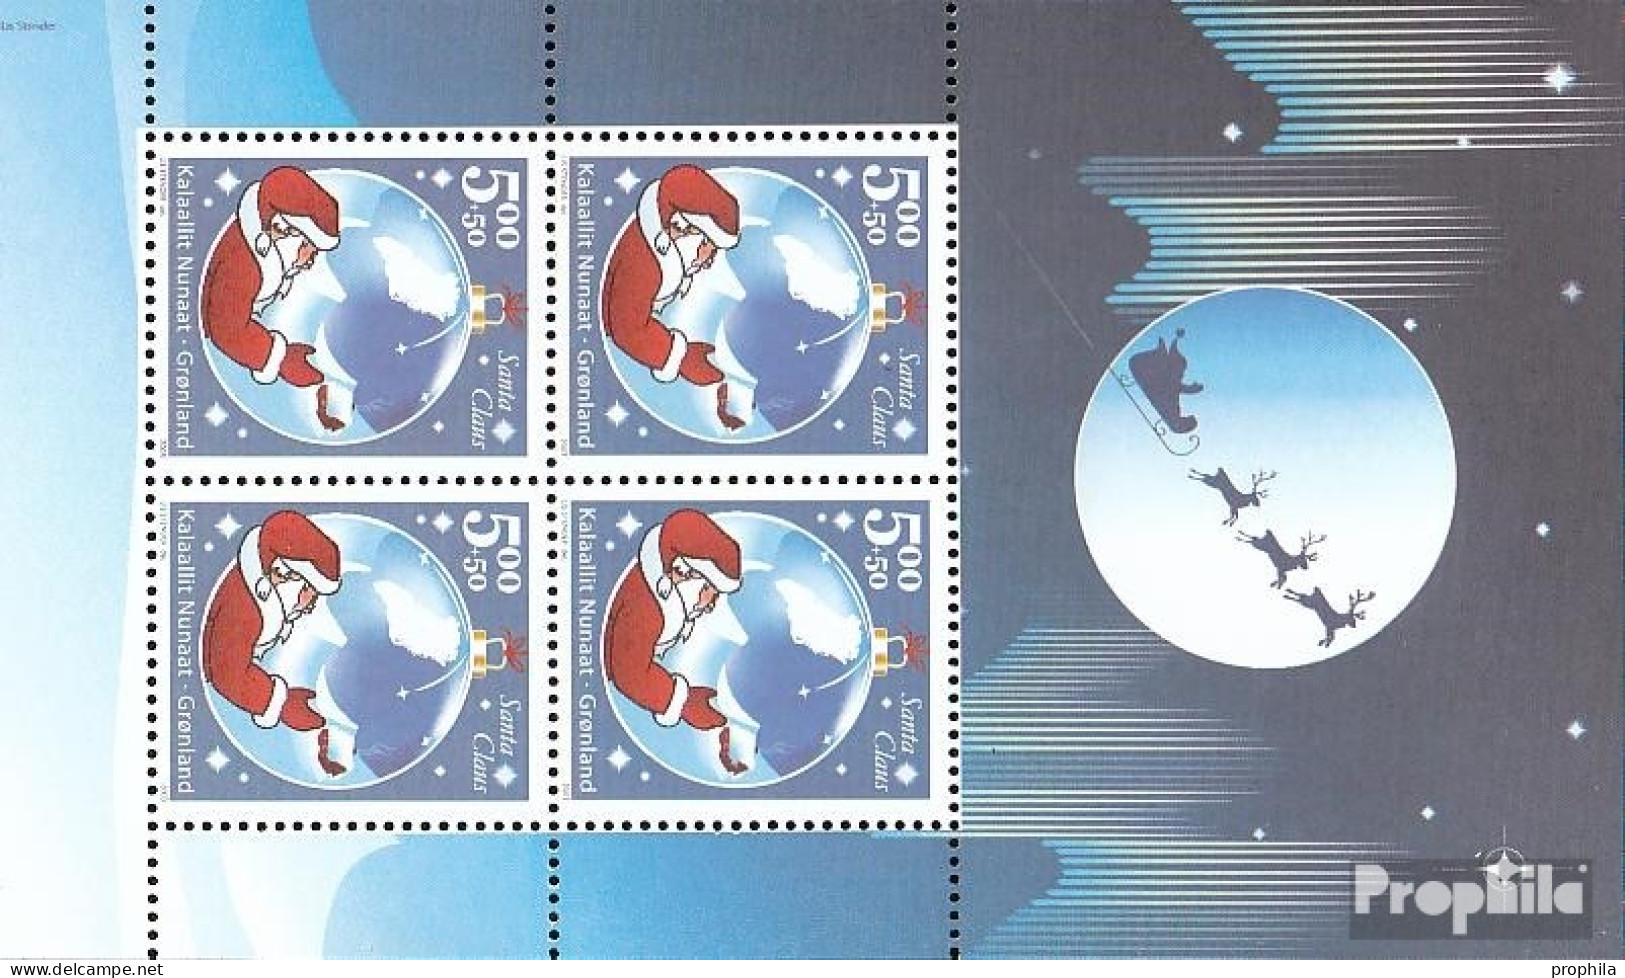 Dänemark - Grönland Block26 (kompl.Ausg.) Postfrisch 2003 Santa Claus Of Greenland - Blokken